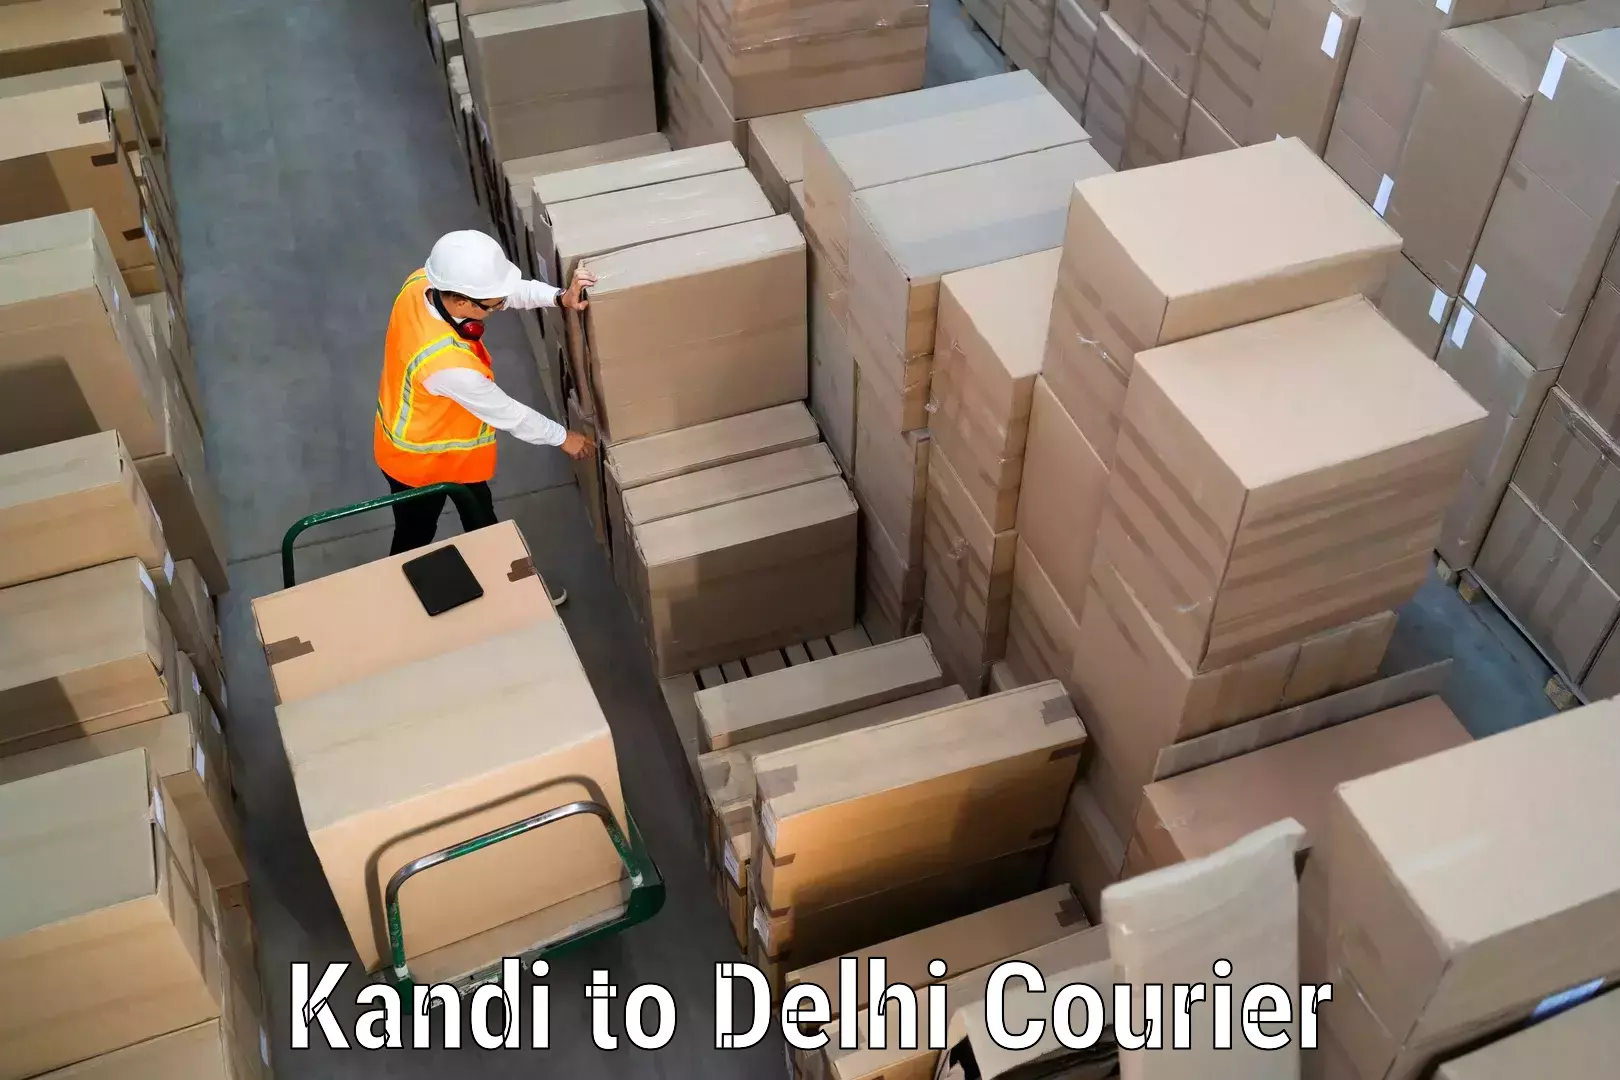 Courier service comparison Kandi to Jamia Millia Islamia New Delhi